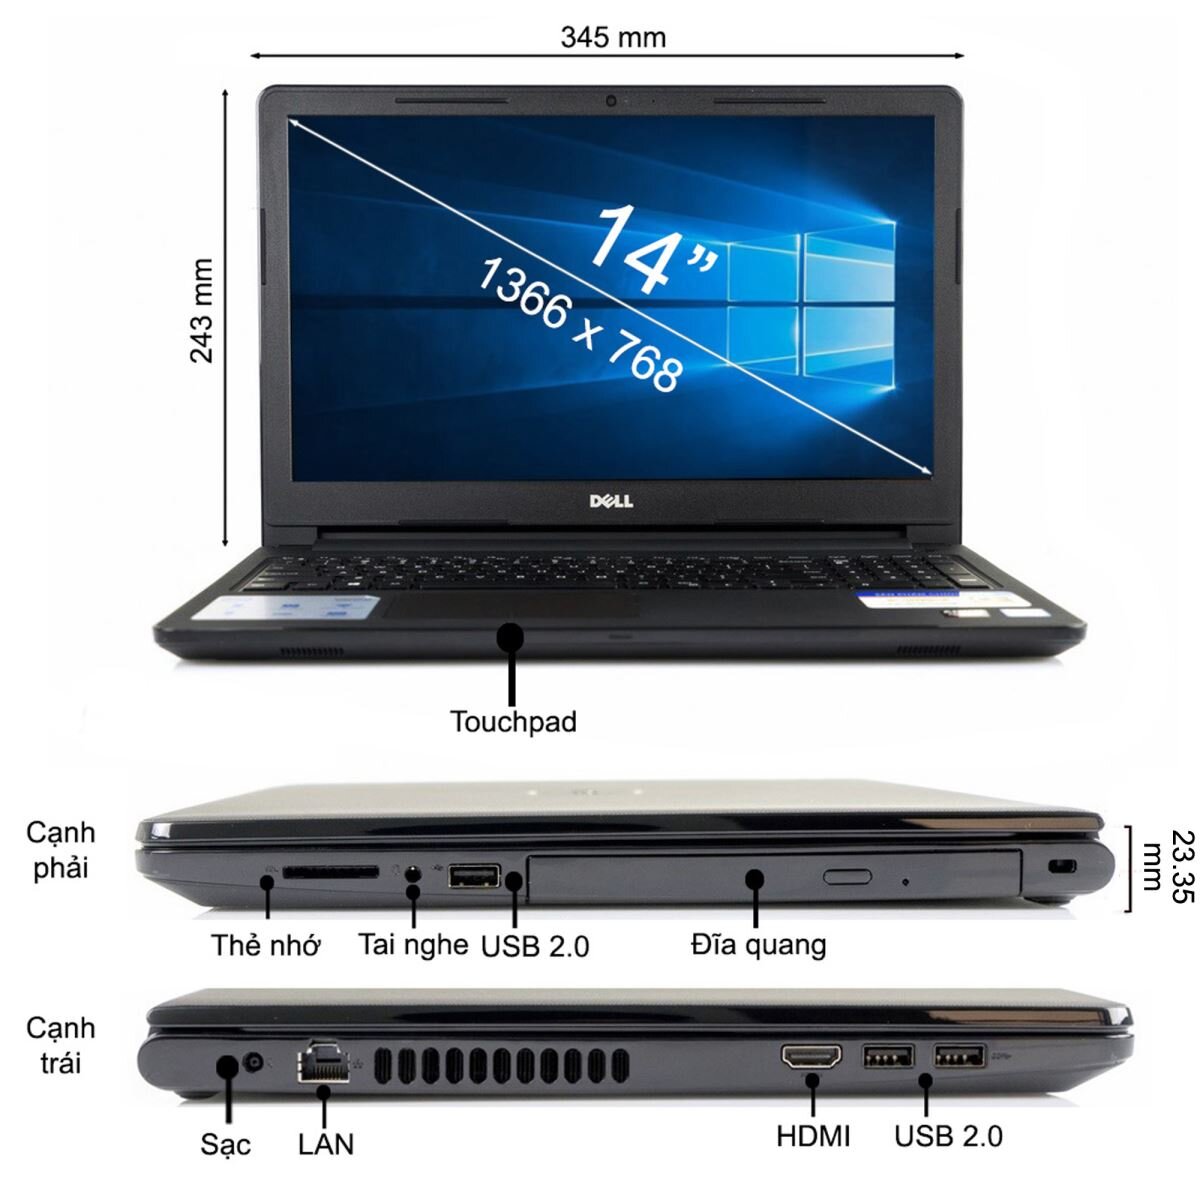 Máy tính xách tay Dell Inspiron 14 3467 (M20NR3) phù hợp với đối tượng học sinh, sinh viên